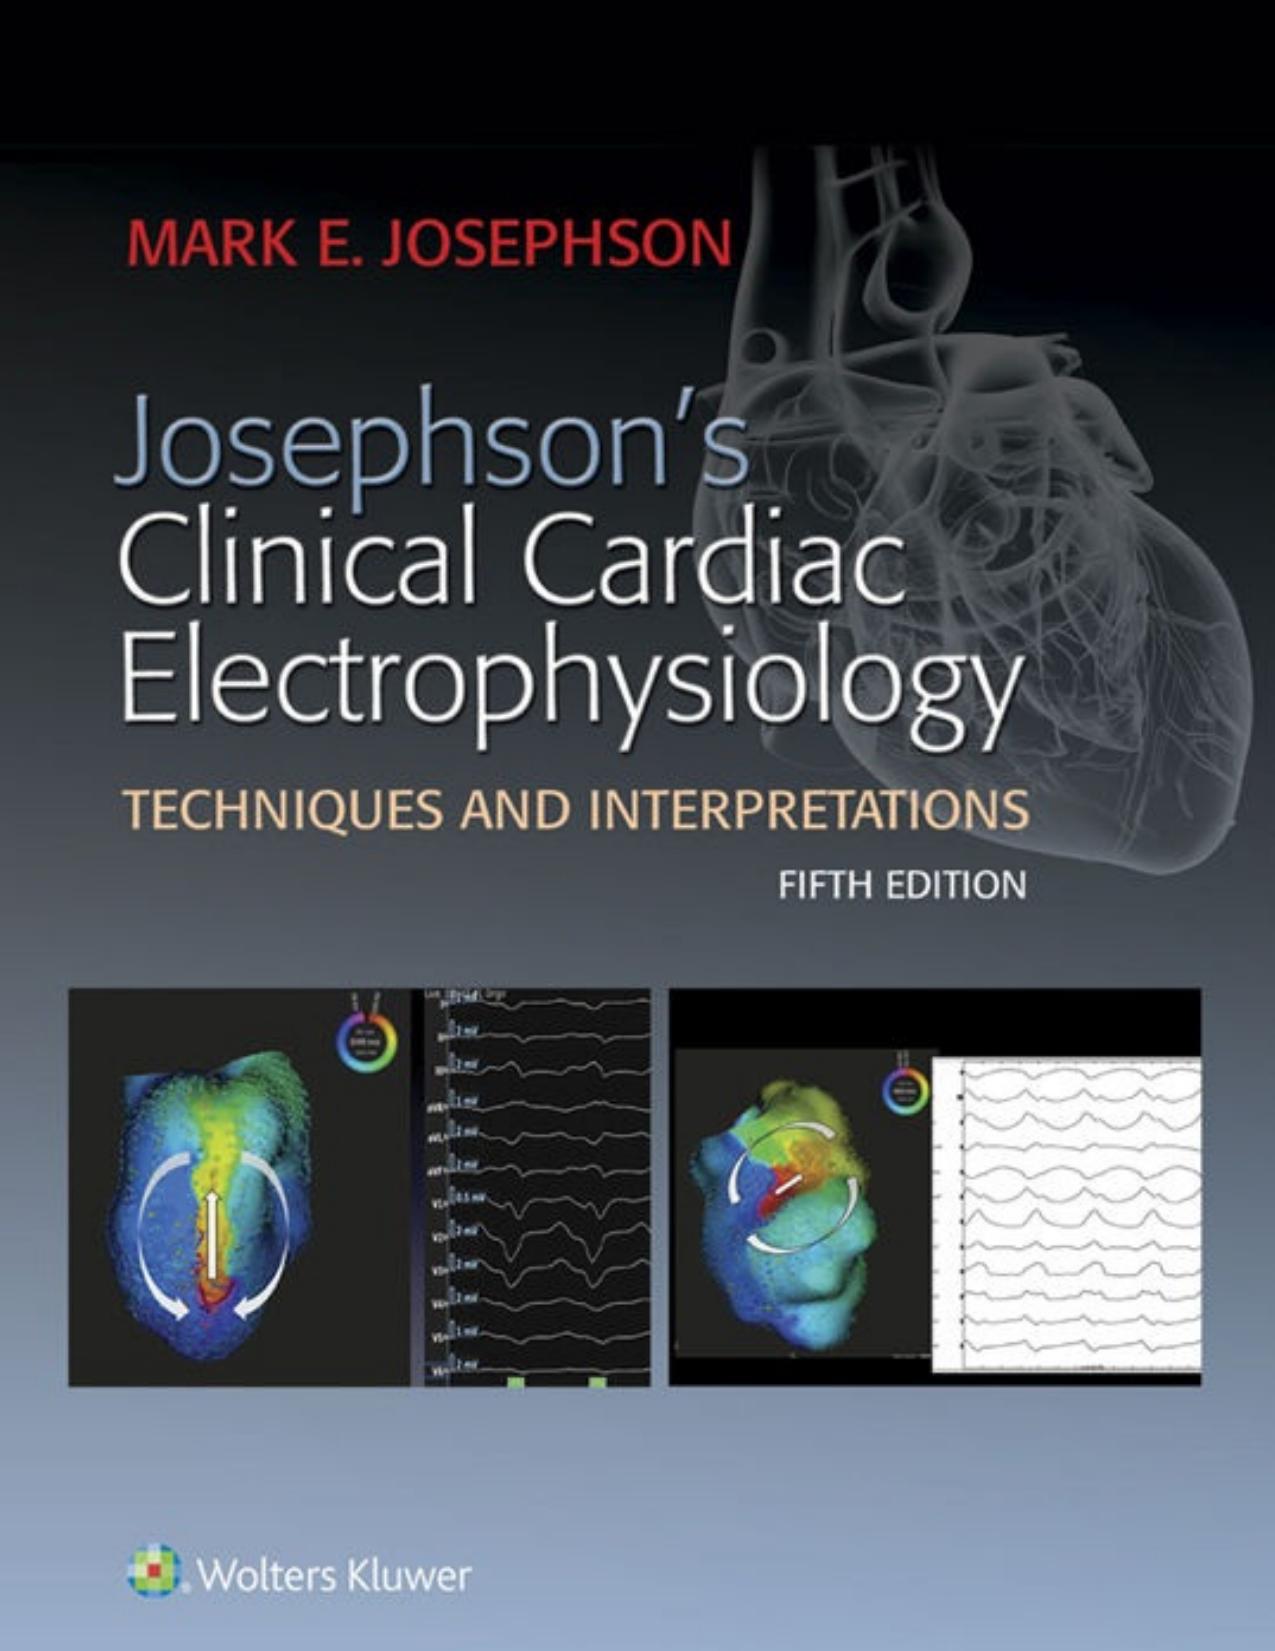 Josephson's Clinical Cardiac Electrophysiology 5th Edition.jpg